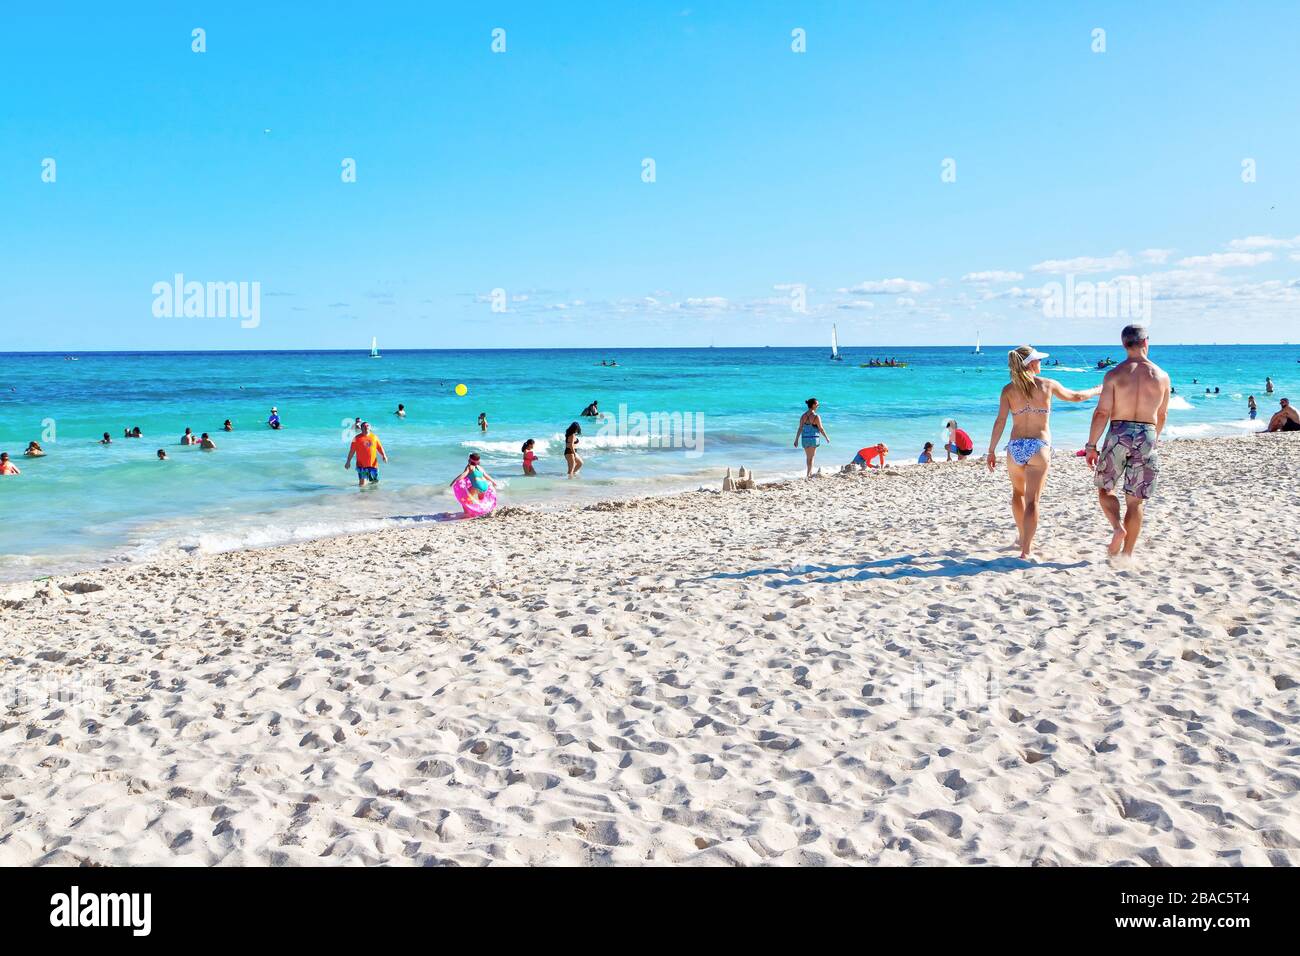 Riviera Maya, Mexique - 28 décembre 2019: Les touristes visitent la plage de Riviera Maya sur la côte des Caraïbes de Cancun, Mexique, dans la péninsule du Yucatan. Banque D'Images